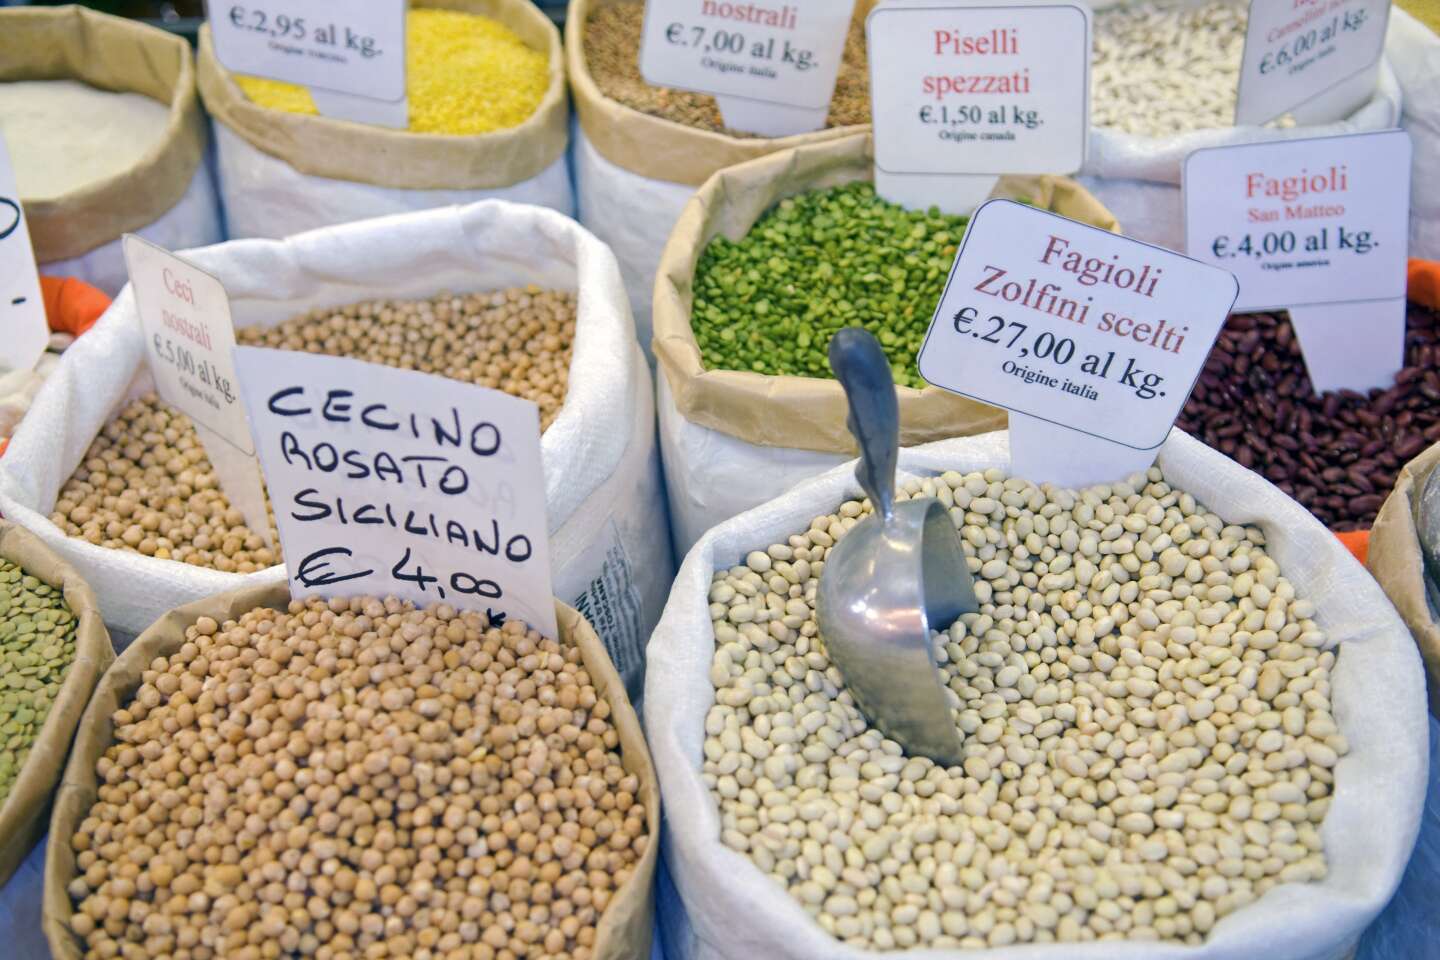 “Debemos promover el consumo de legumbres, que tienen un impacto positivo en las finanzas, la salud y el medio ambiente de los europeos”.